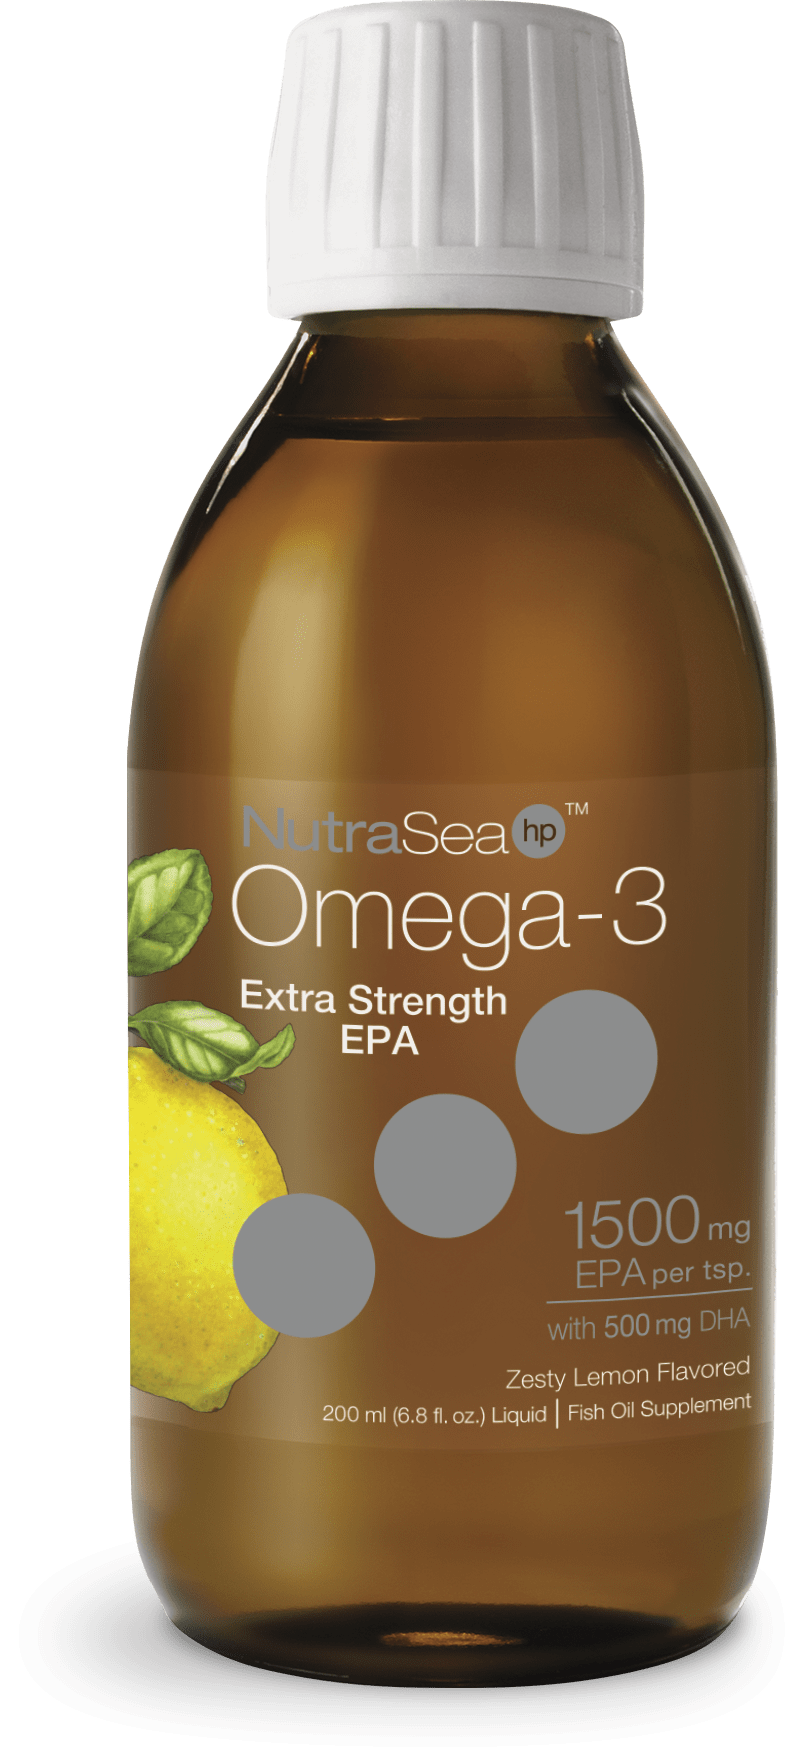 NutraSea HP, Omega-3 Extra Strength EPA, 제스티 레몬, 200mL